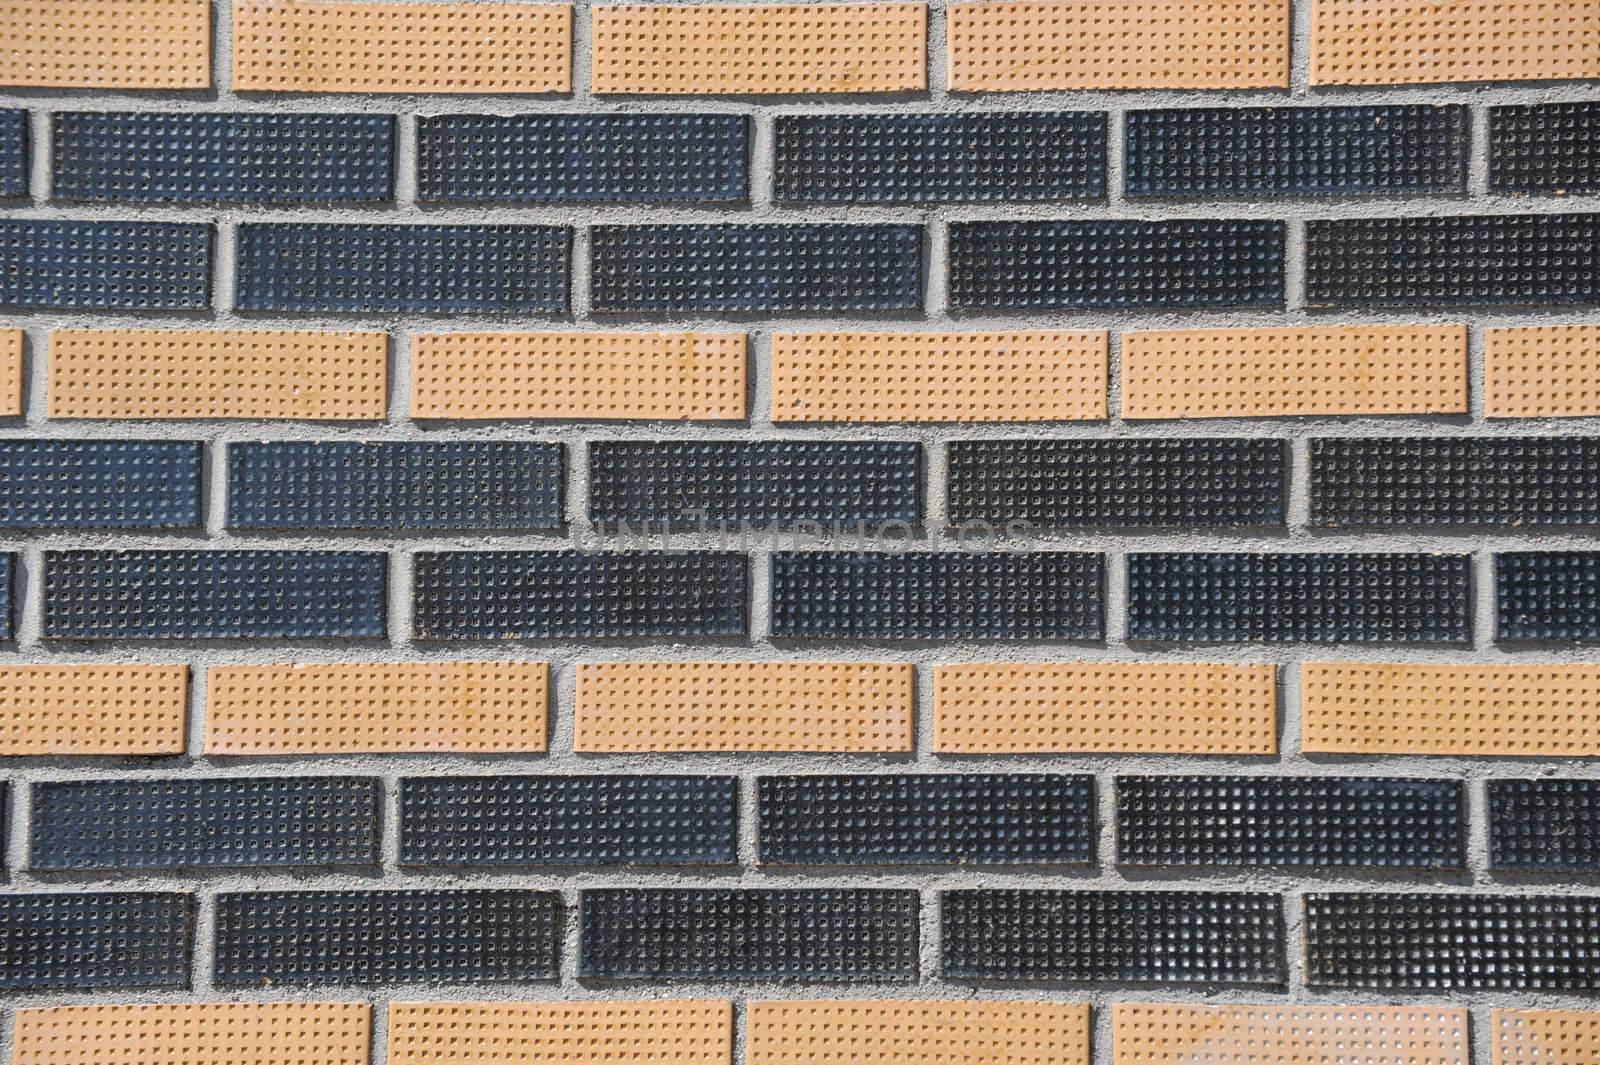 Brick wall by Alenmax